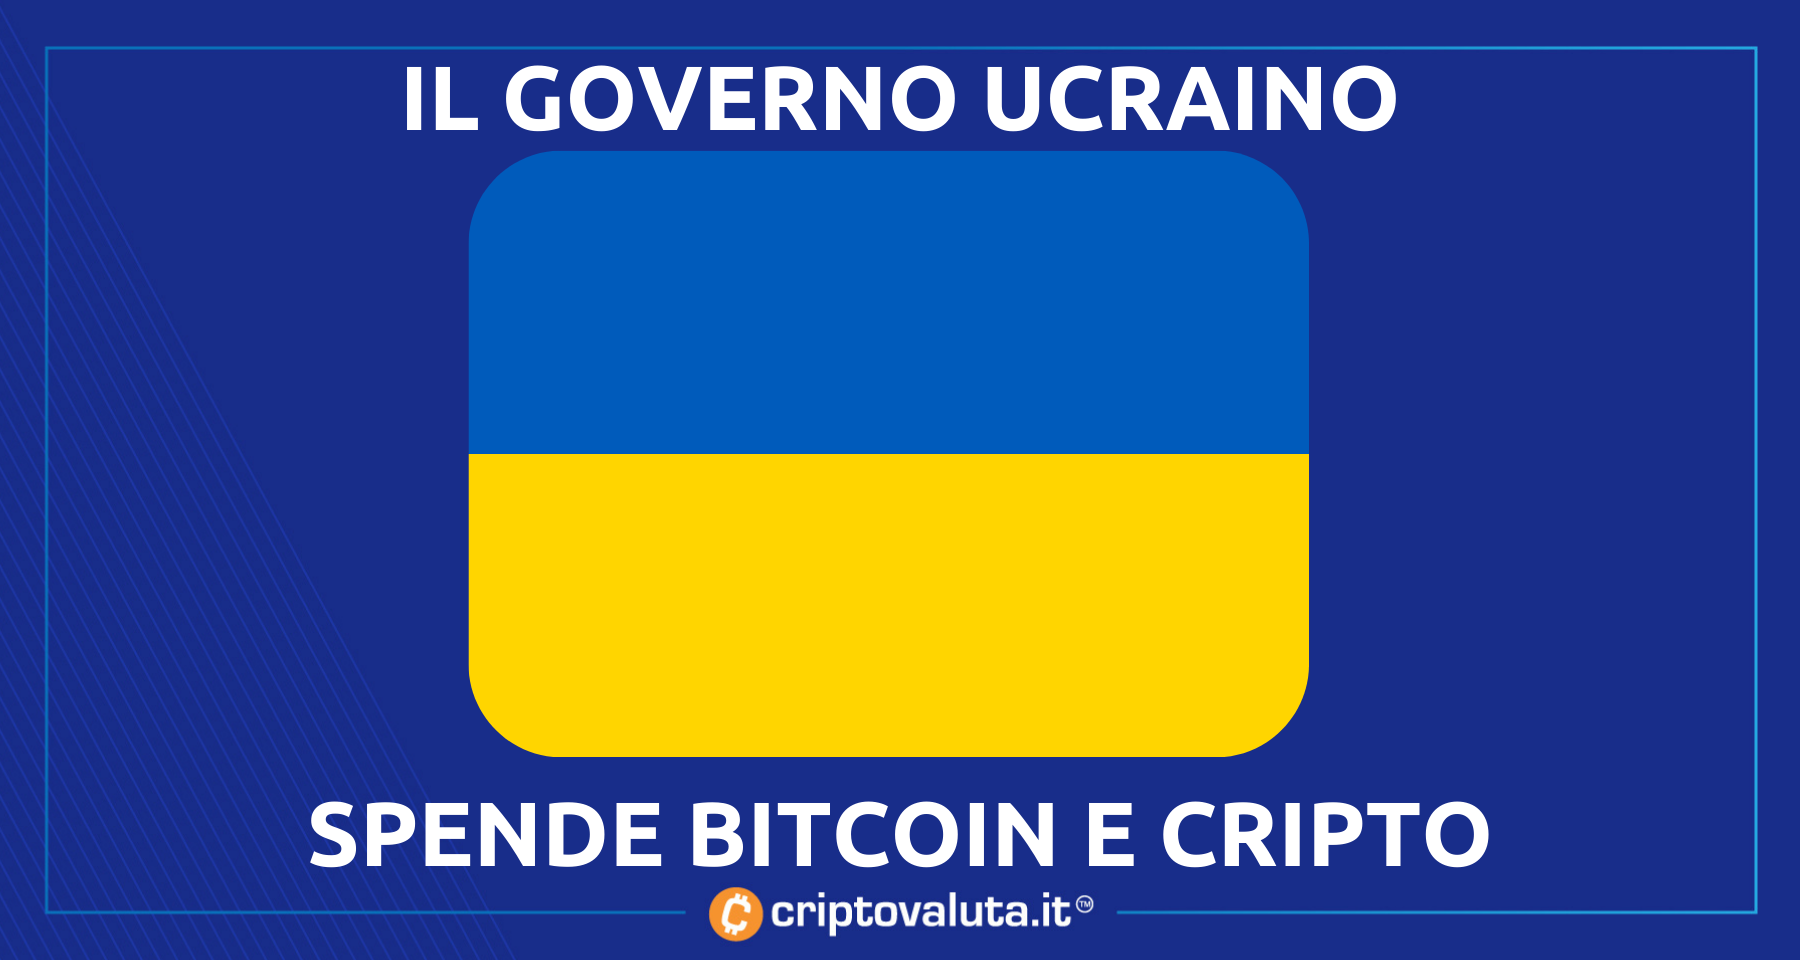 Bitcoin, Ethereum e cripto per l’Ucraina | Come sono stati spesi i 54 milioni